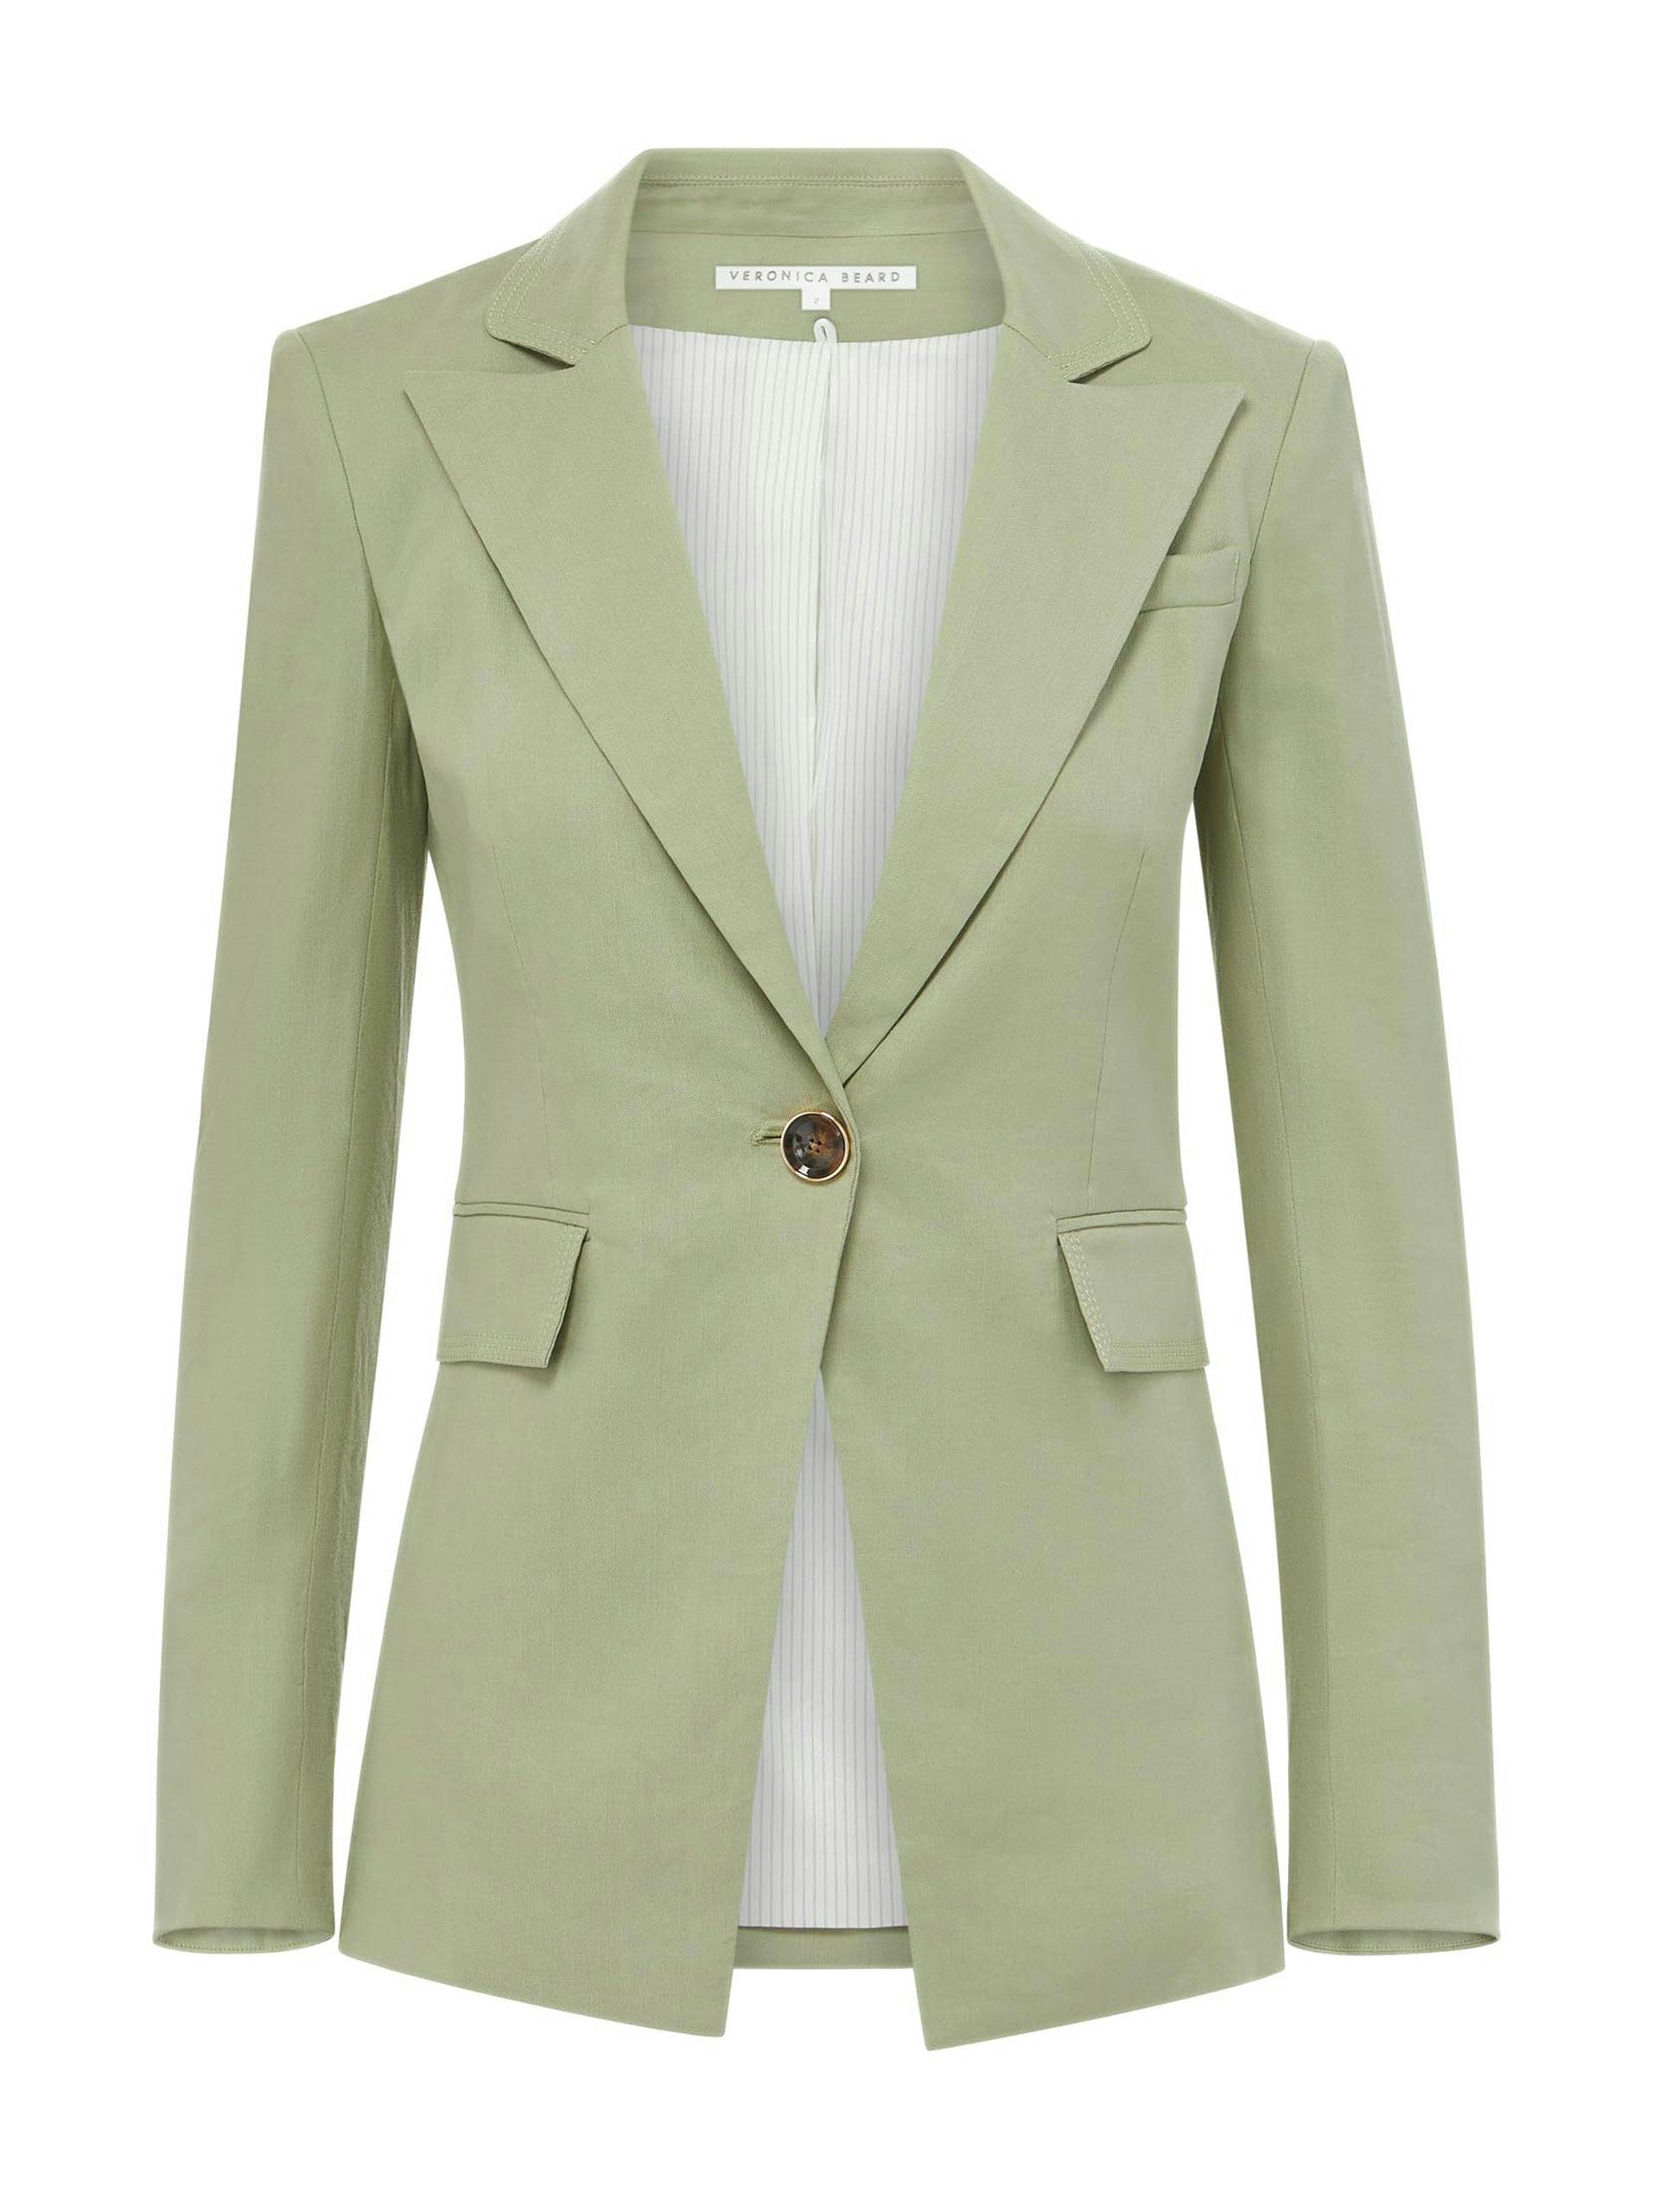 Pale green blazer